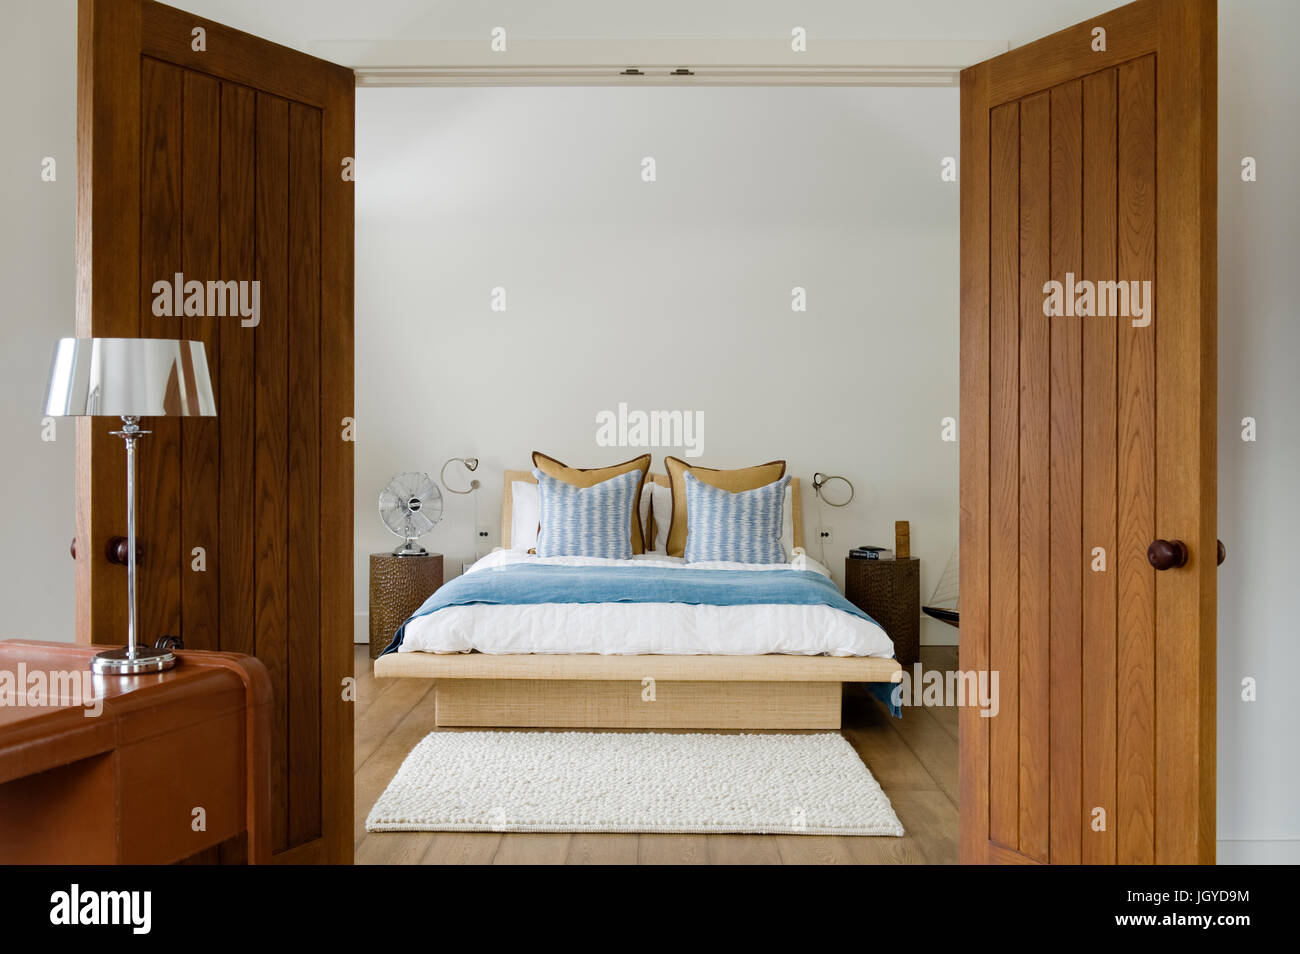 Open wooden doors to coastal bedroom Stock Photo